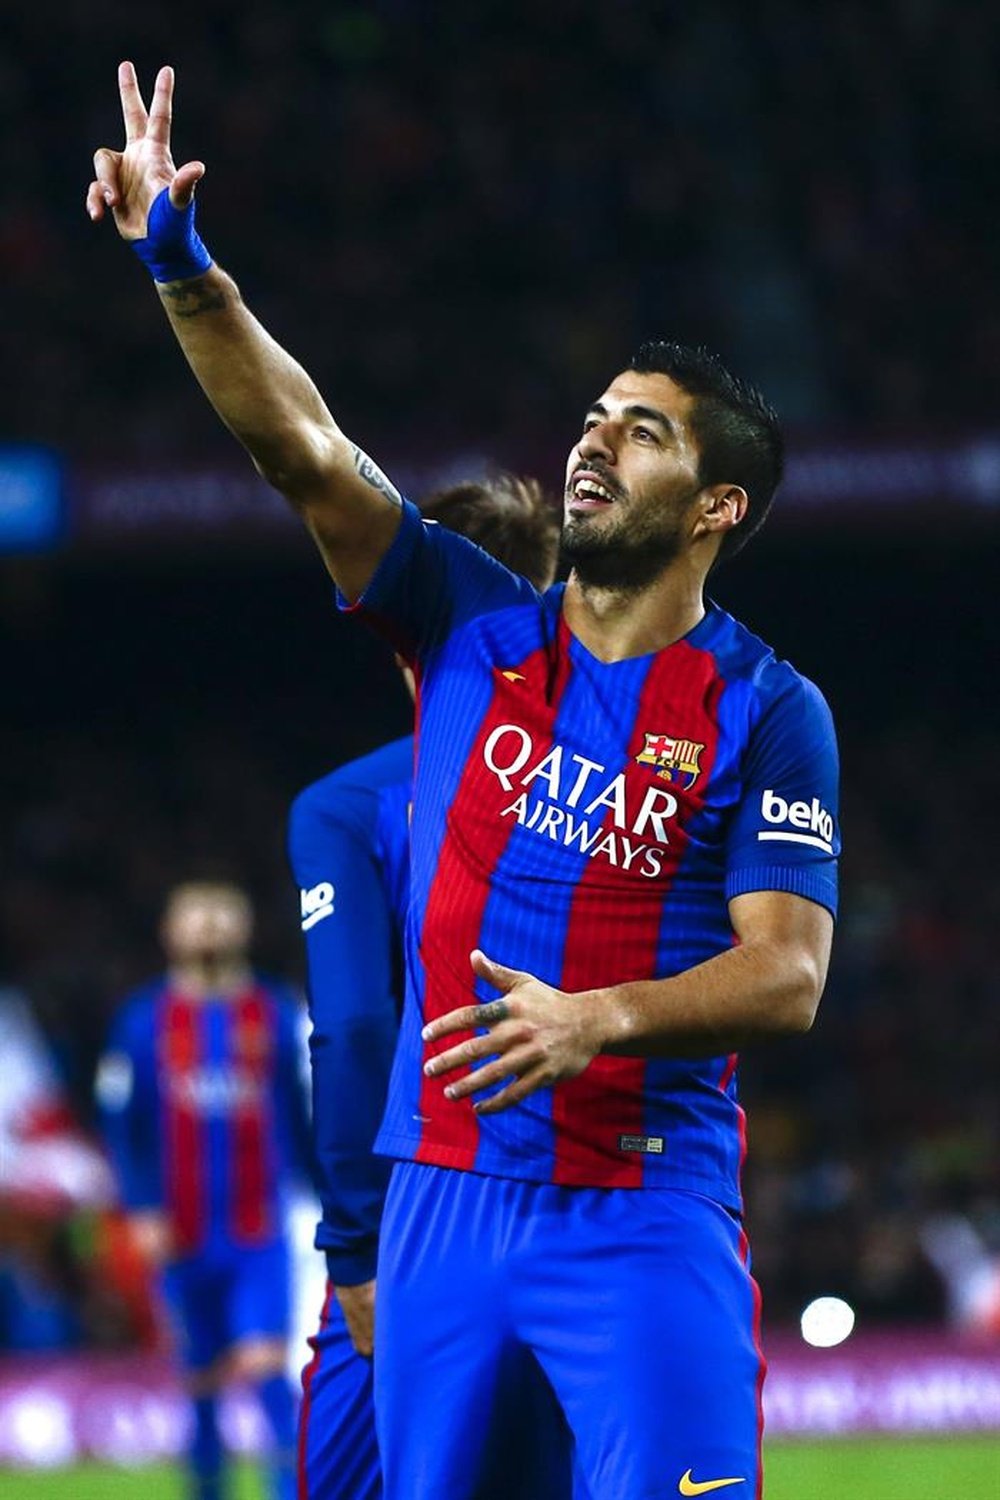 O atacante uruguaio Luis Suárez tem marcado até o momento 99 gols com o Barça. EFE